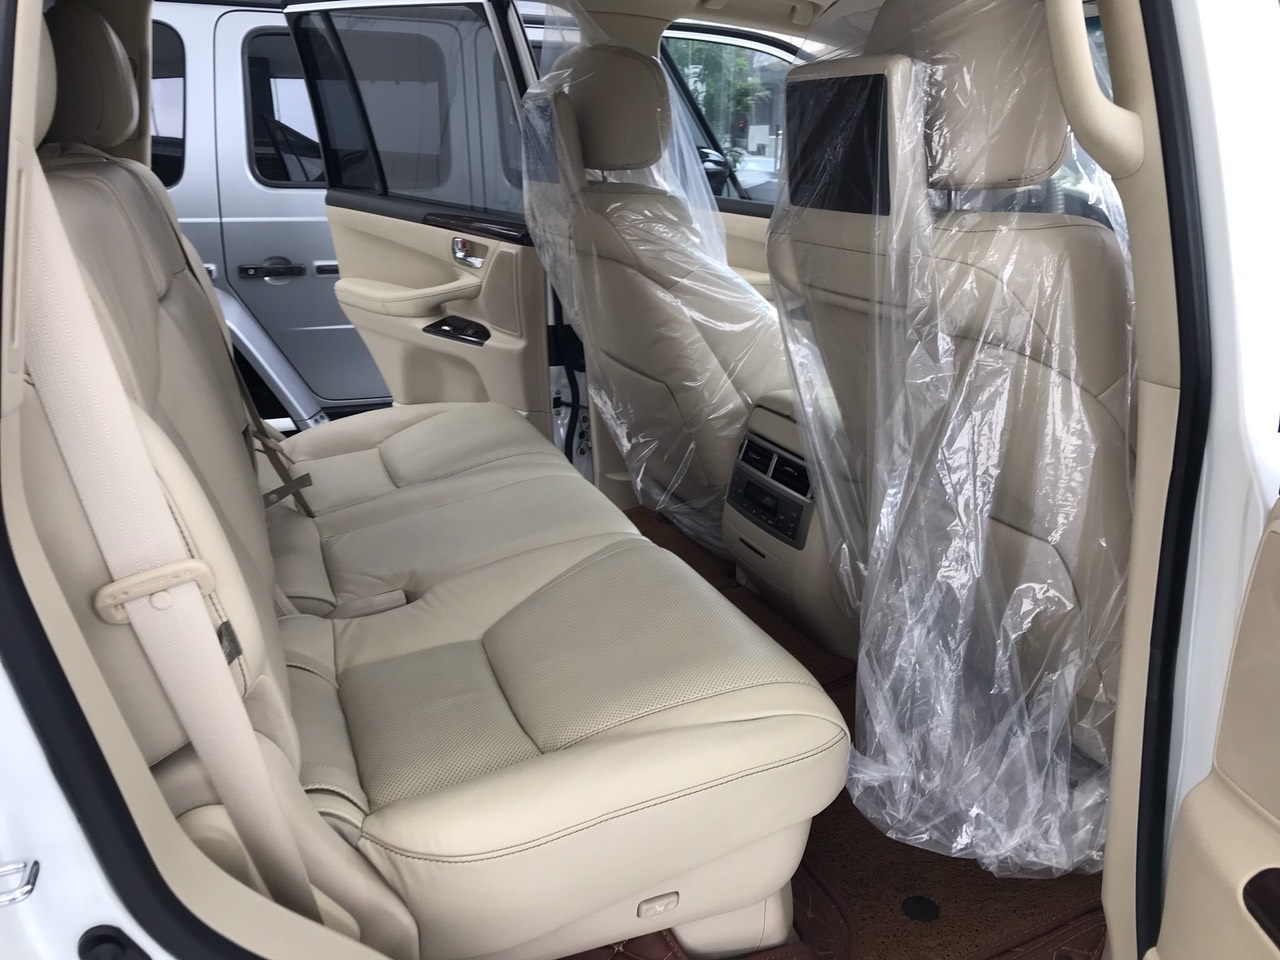 Bán chiếc Lexus LX570 xuất Mỹ màu trắng Model 2014 xe đăng ký tên cá nhân biển Hà nội đẹp-10